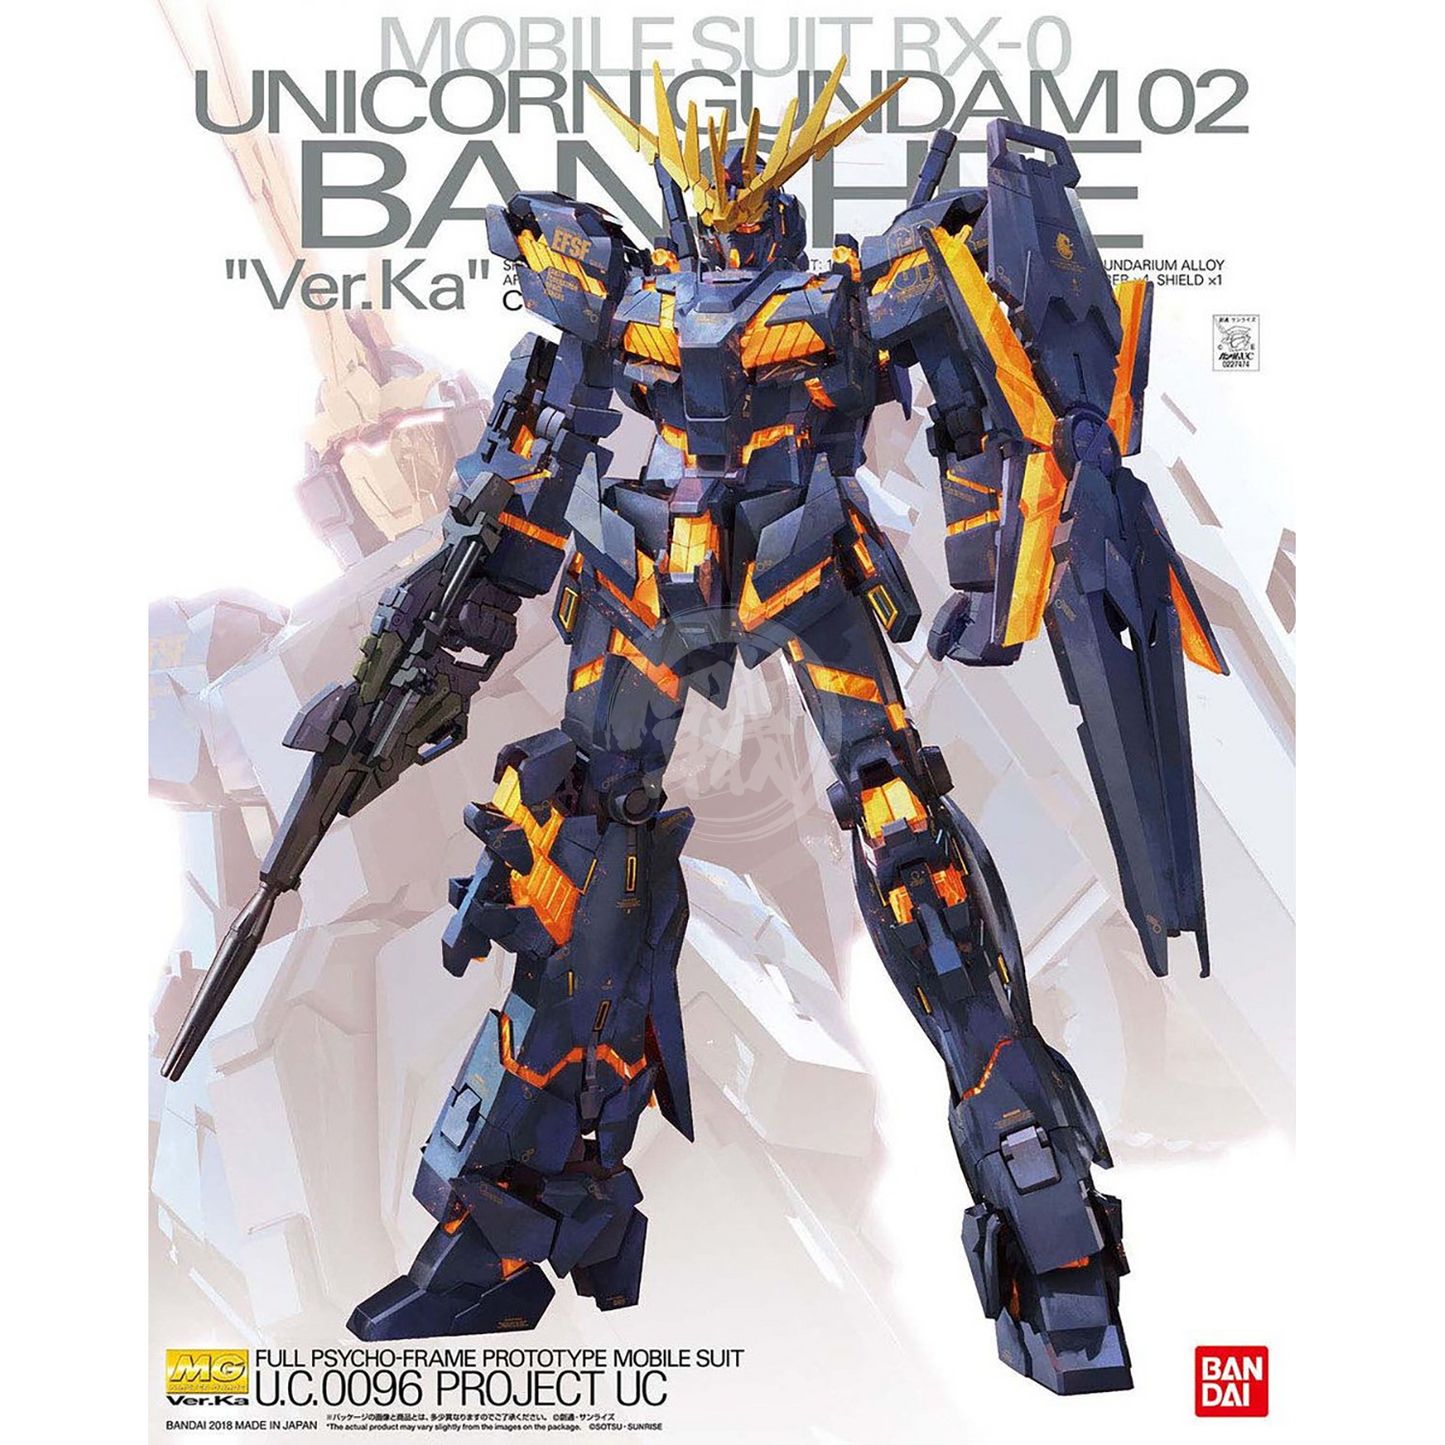 MG Unicorn Gundam Unit-02 Banshee Ver.Ka - ShokuninGunpla